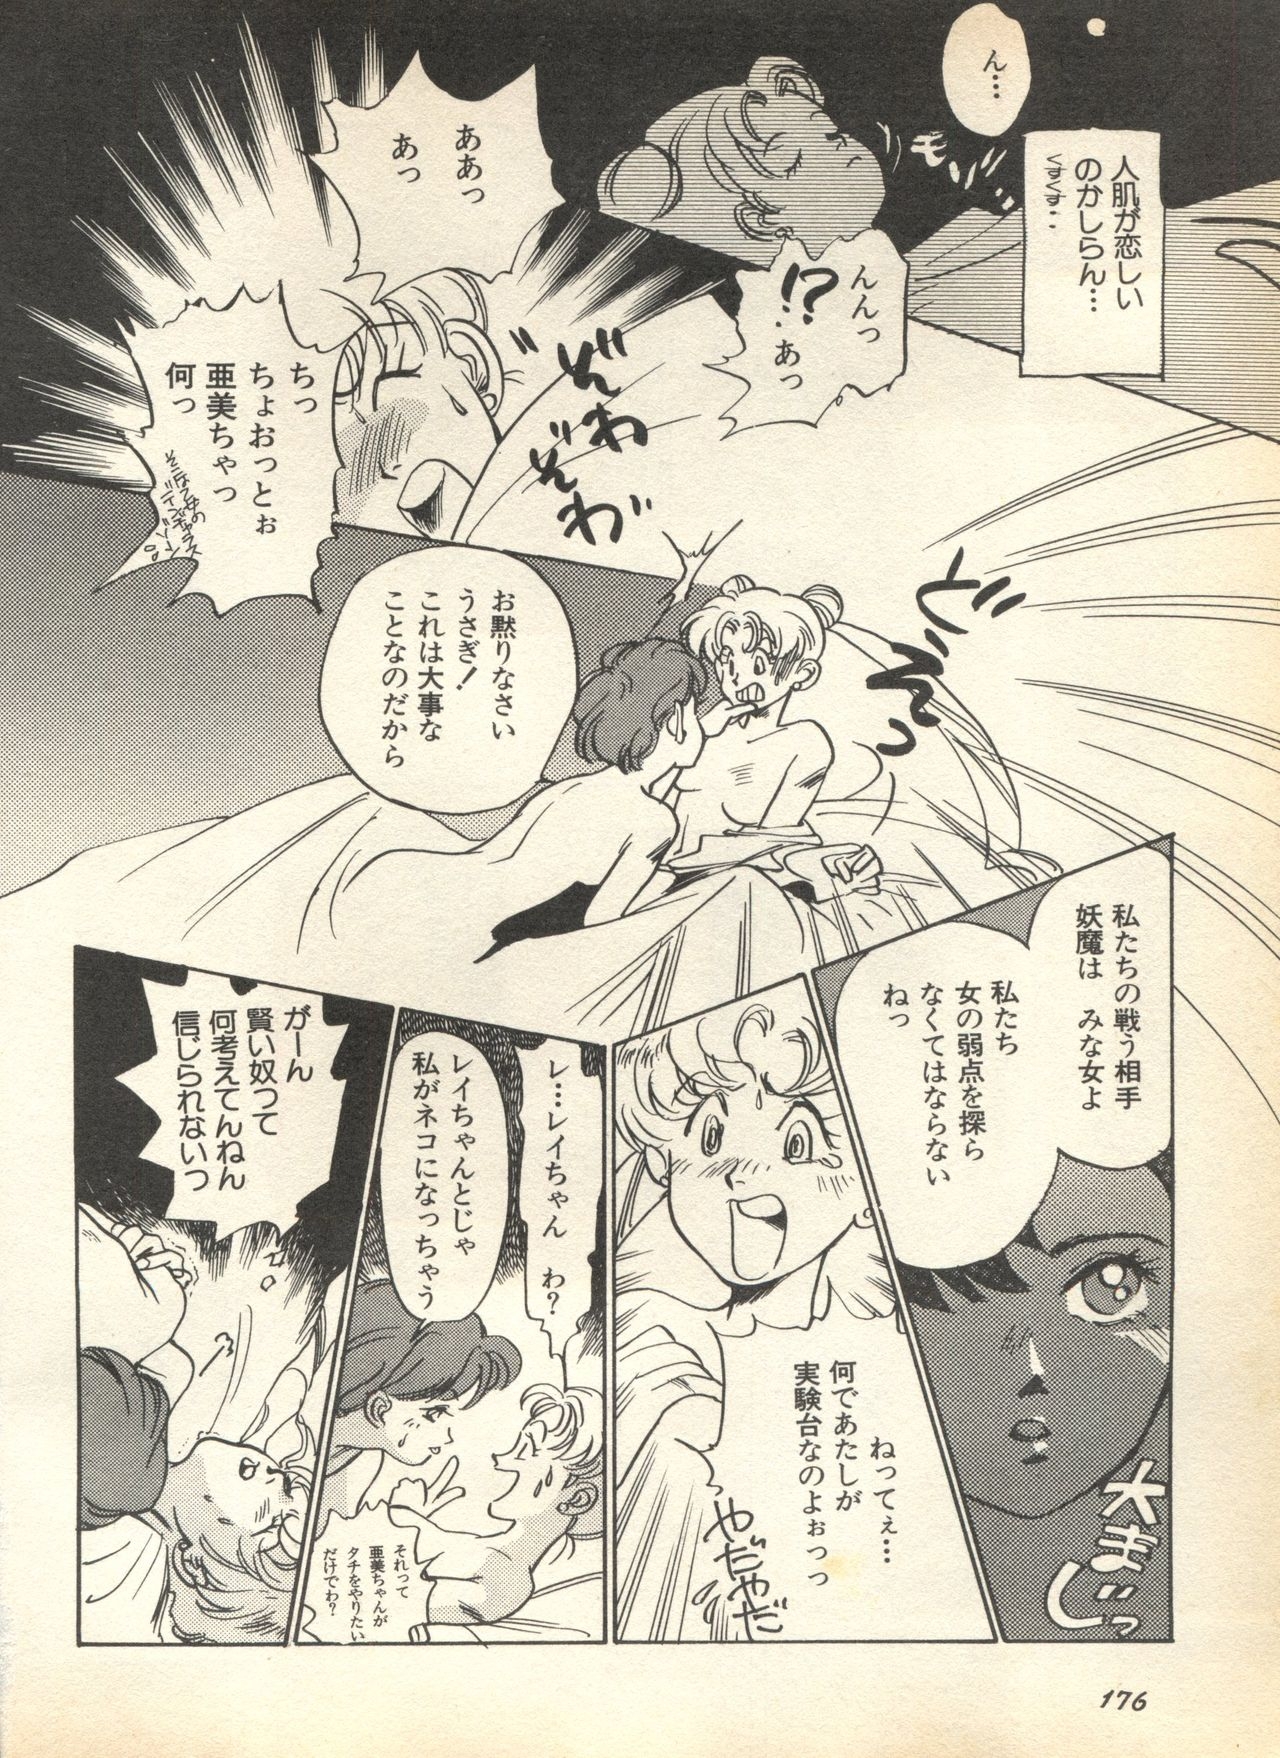 [Anthology] Lunatic Party 7 (Bishoujo Senshi Sailor Moon) 177